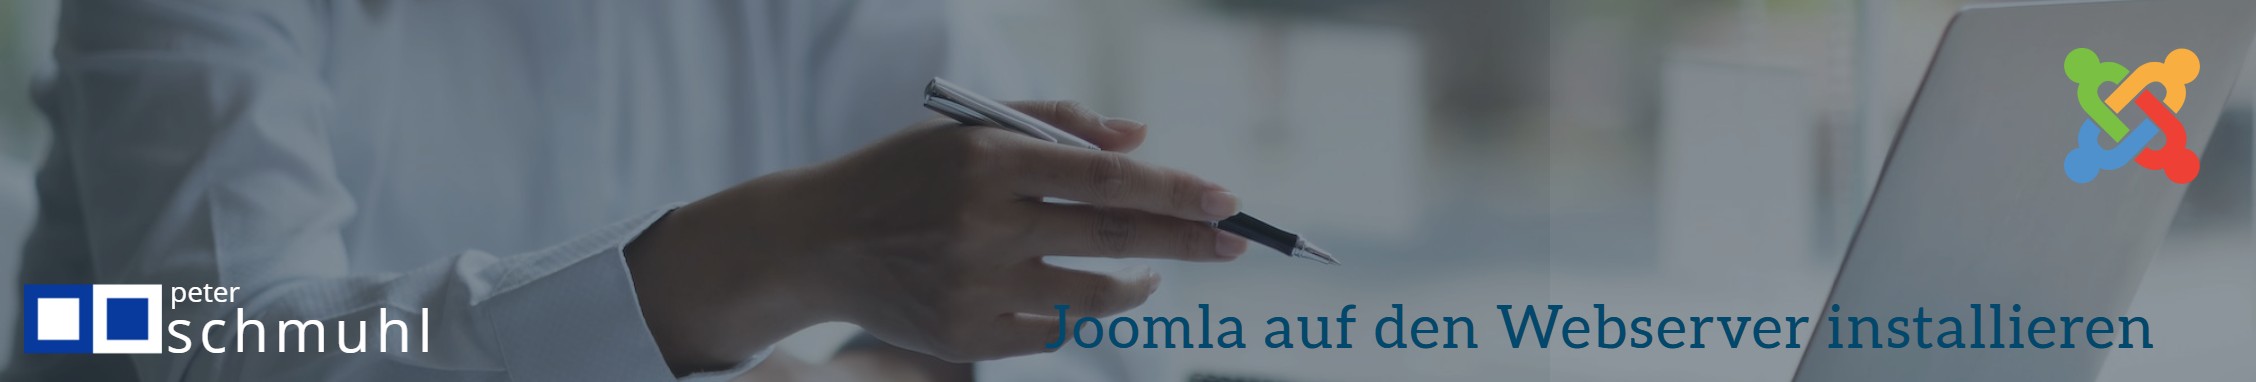 Joomla auf dem Webserver installieren